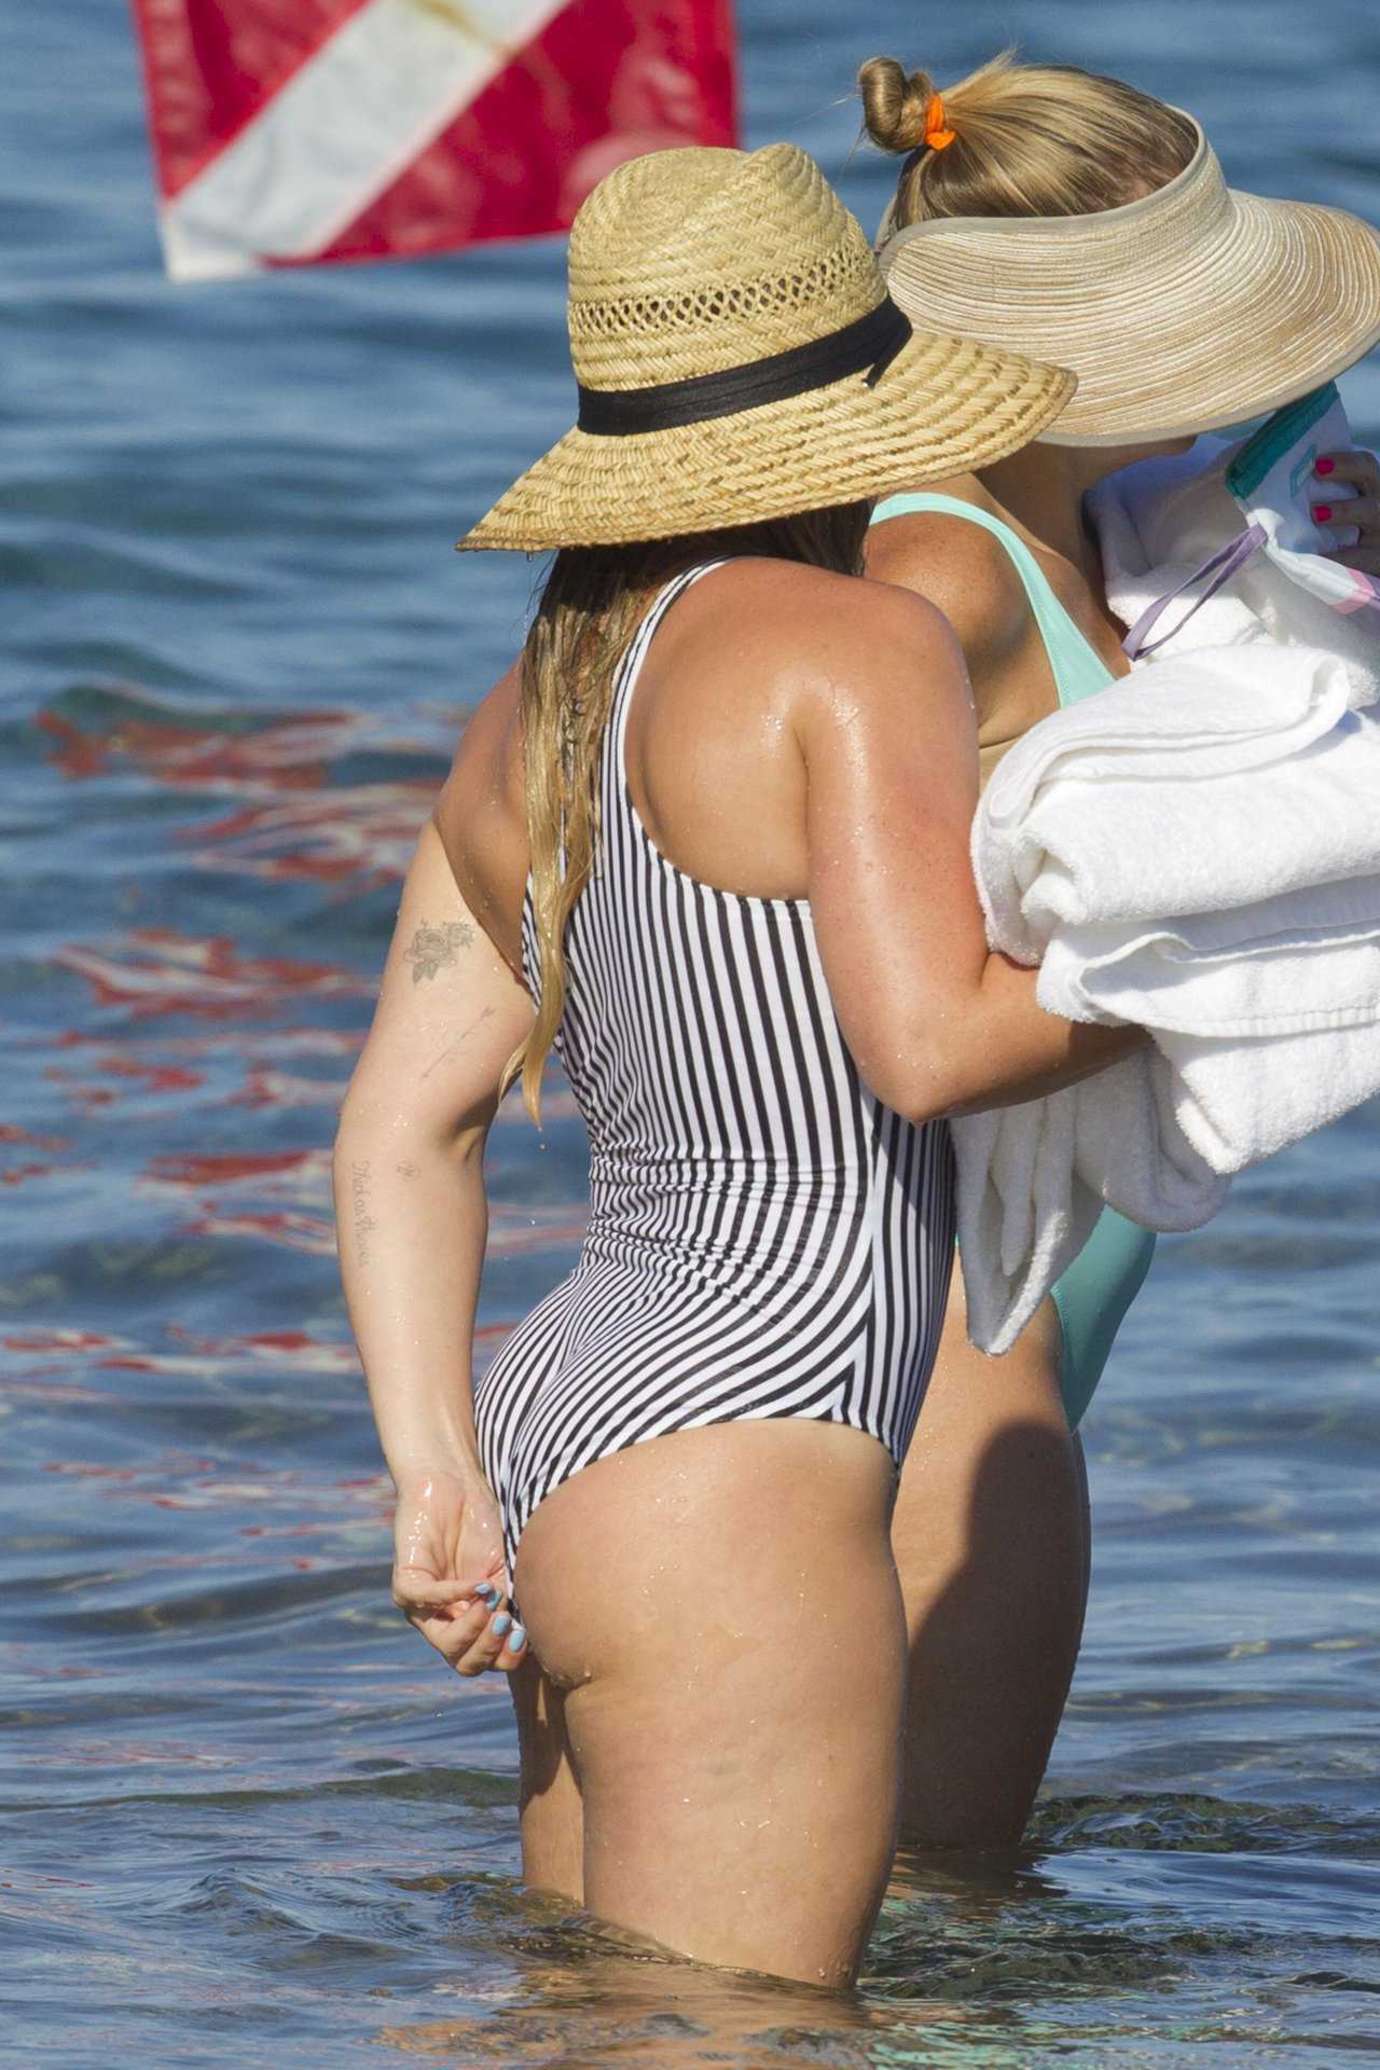 Hilary Duff in Swimsuit in Hawaii.